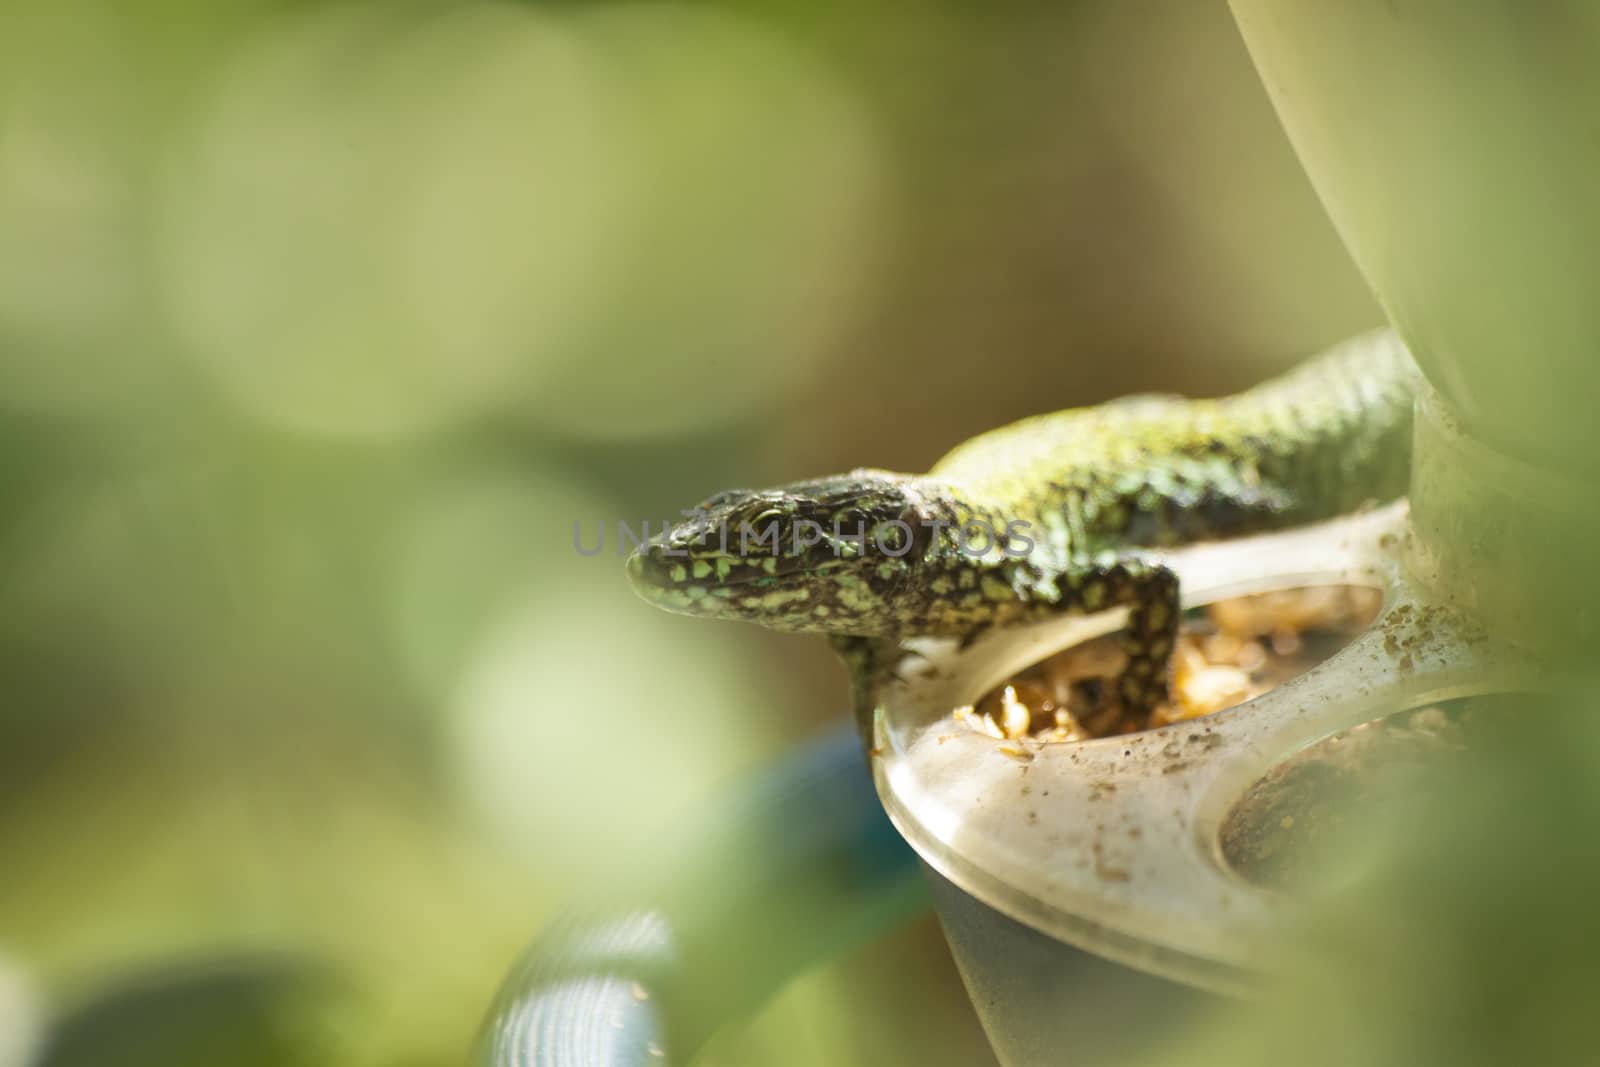 View of a Lizard on a bird feeder